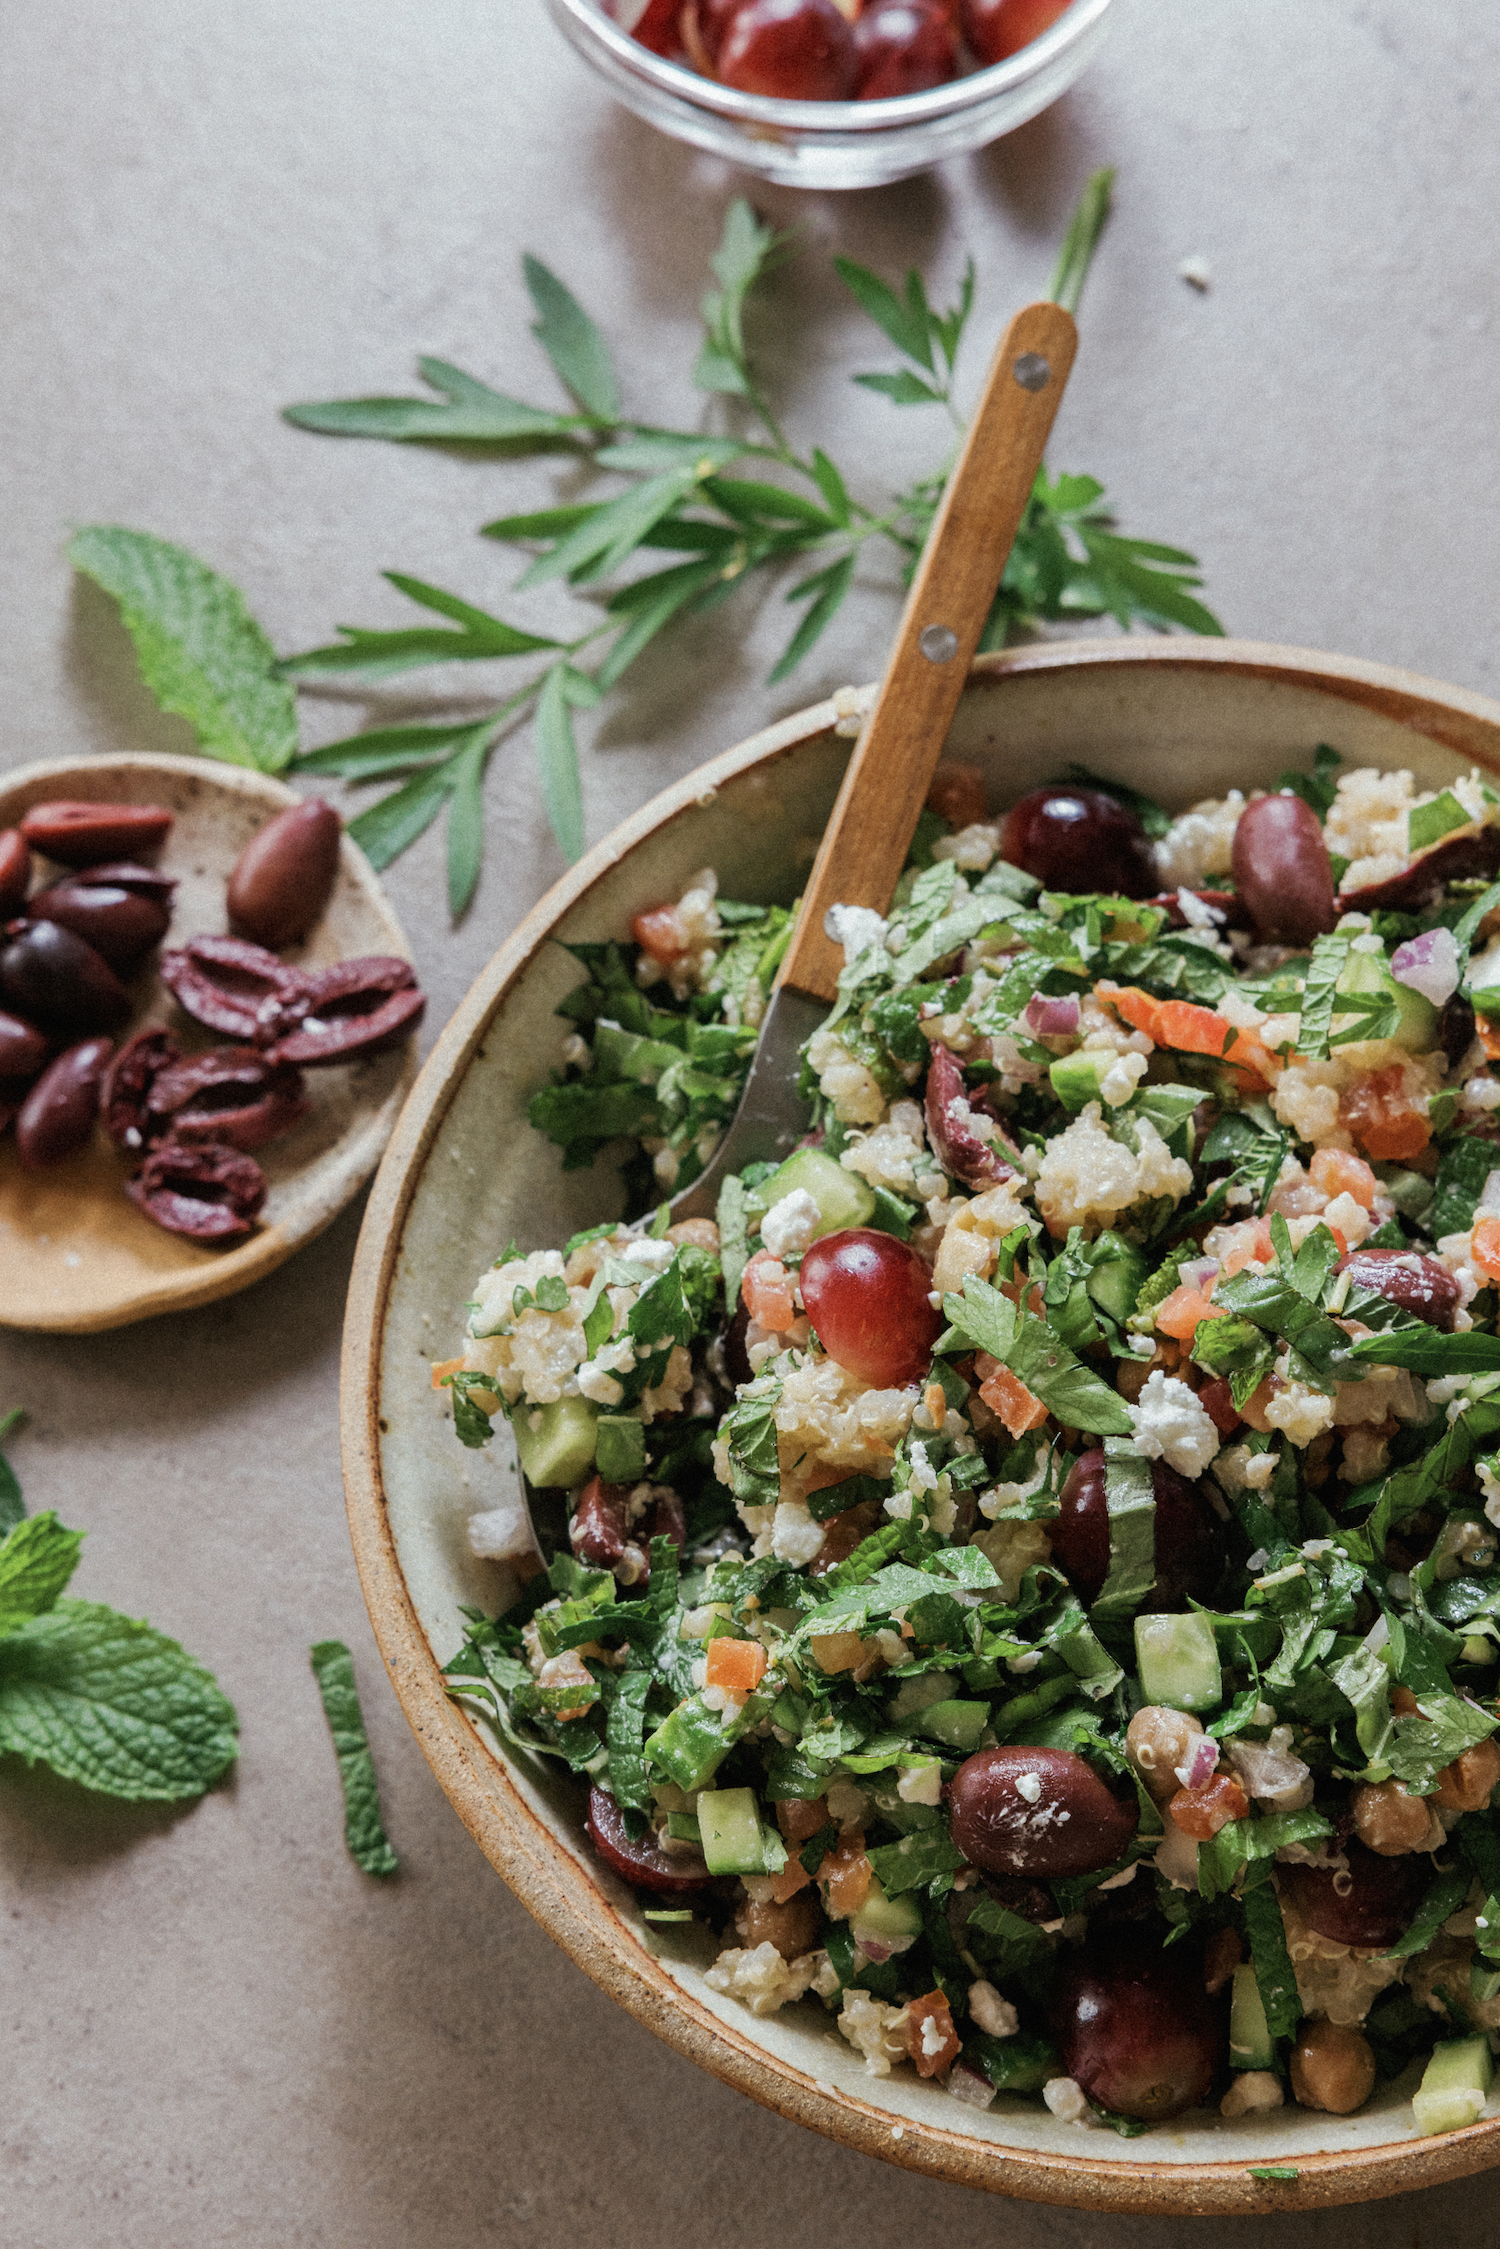 Tazón de cereales mediterráneos con sabor a ensalada griega: ideas saludables para un almuerzo fácil